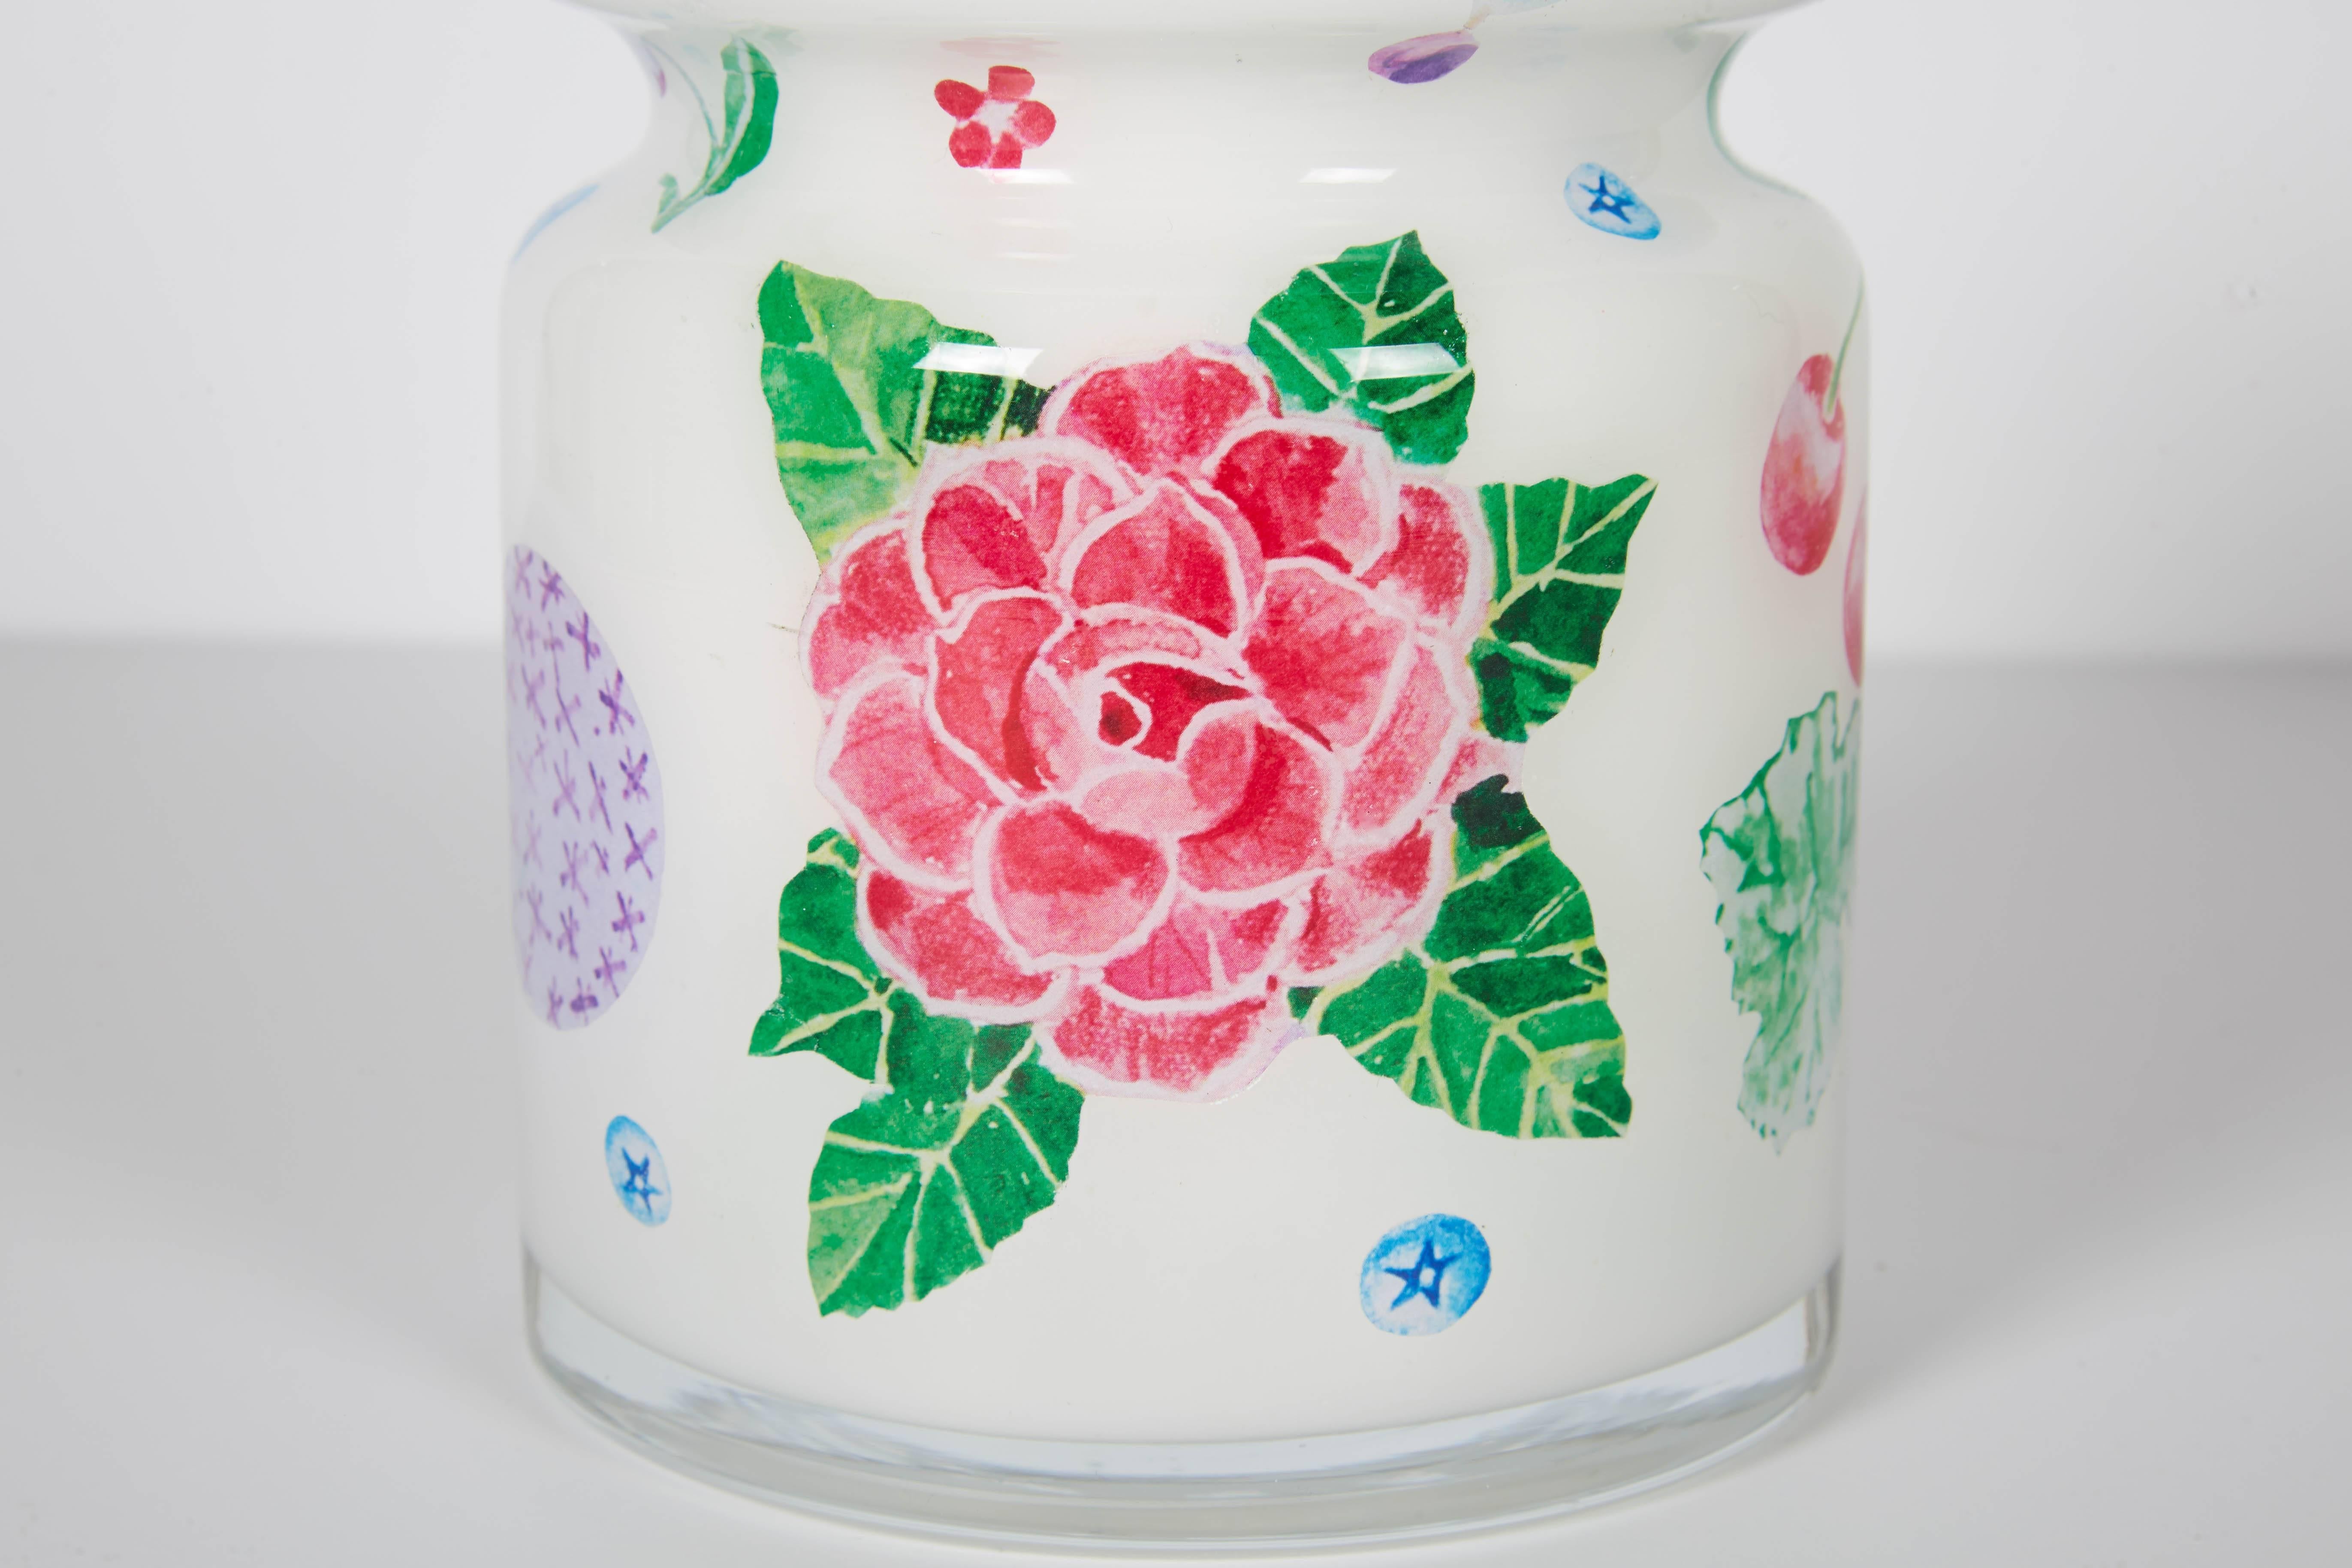 Handgefertigtes, mit Blumen gestaltetes Decoupage-Glas mit Deckel, entworfen von Cathy Graham und hergestellt von Scott Potter.